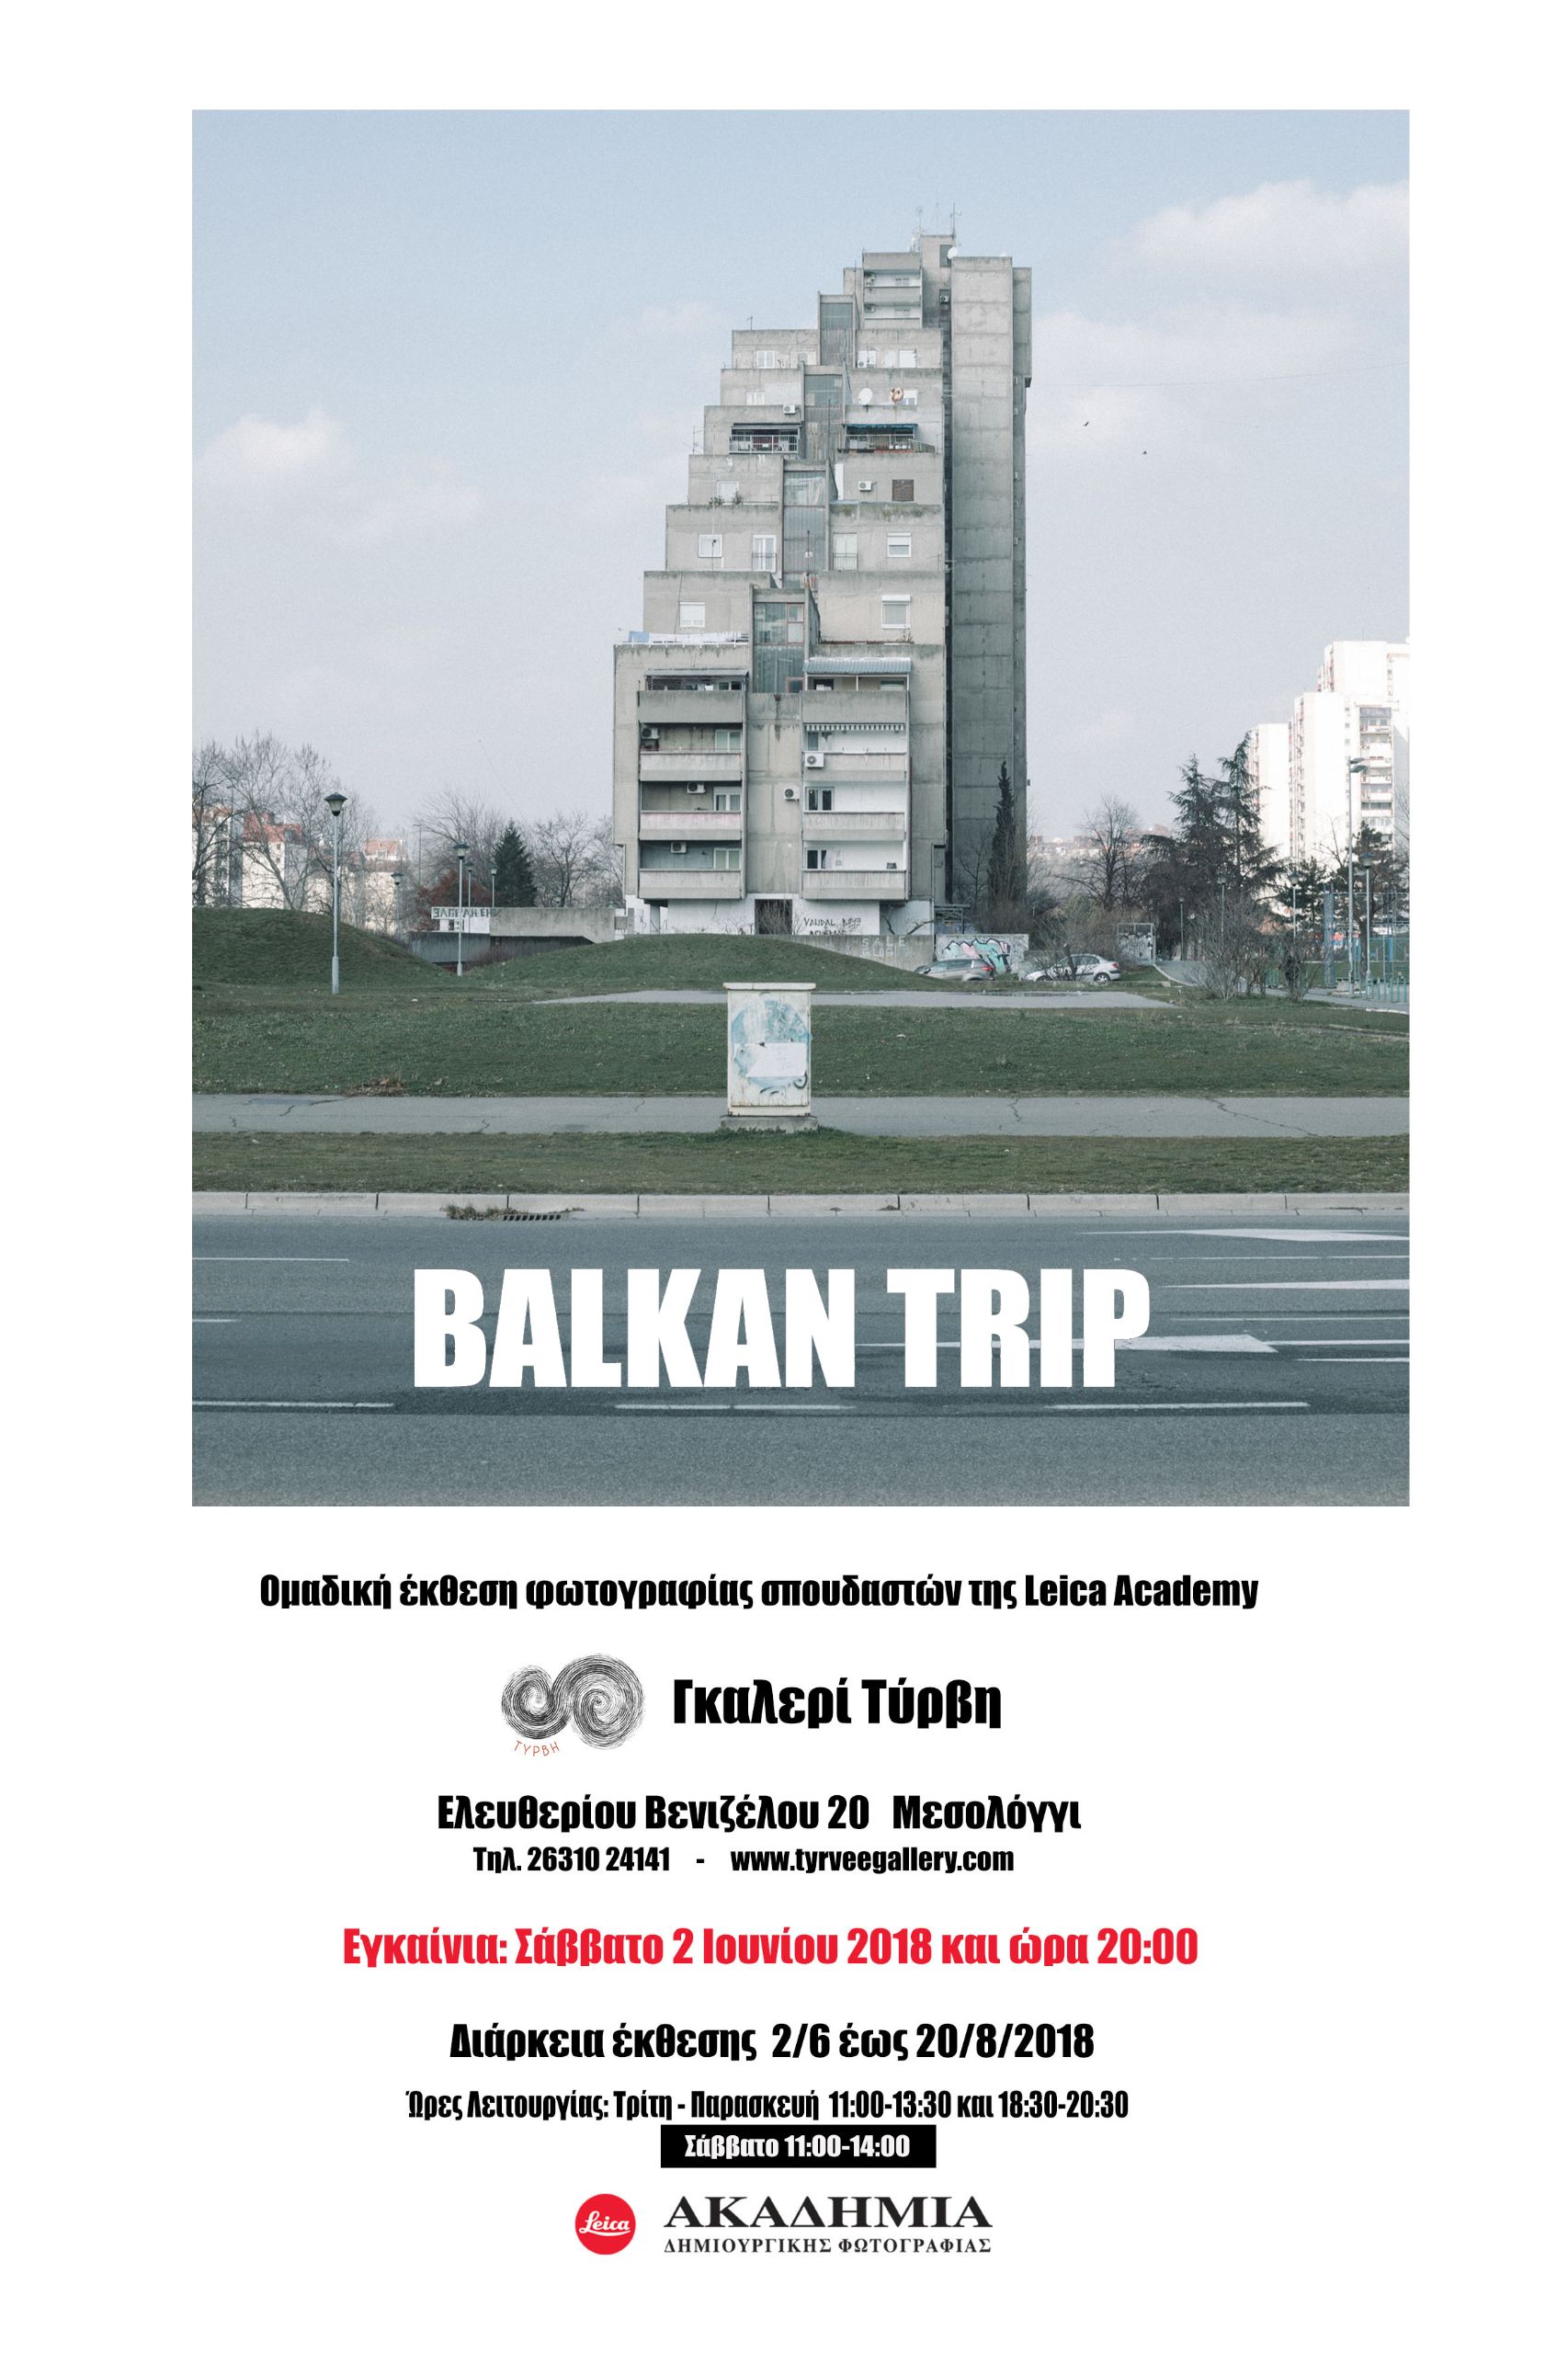 Balkan trip 2018